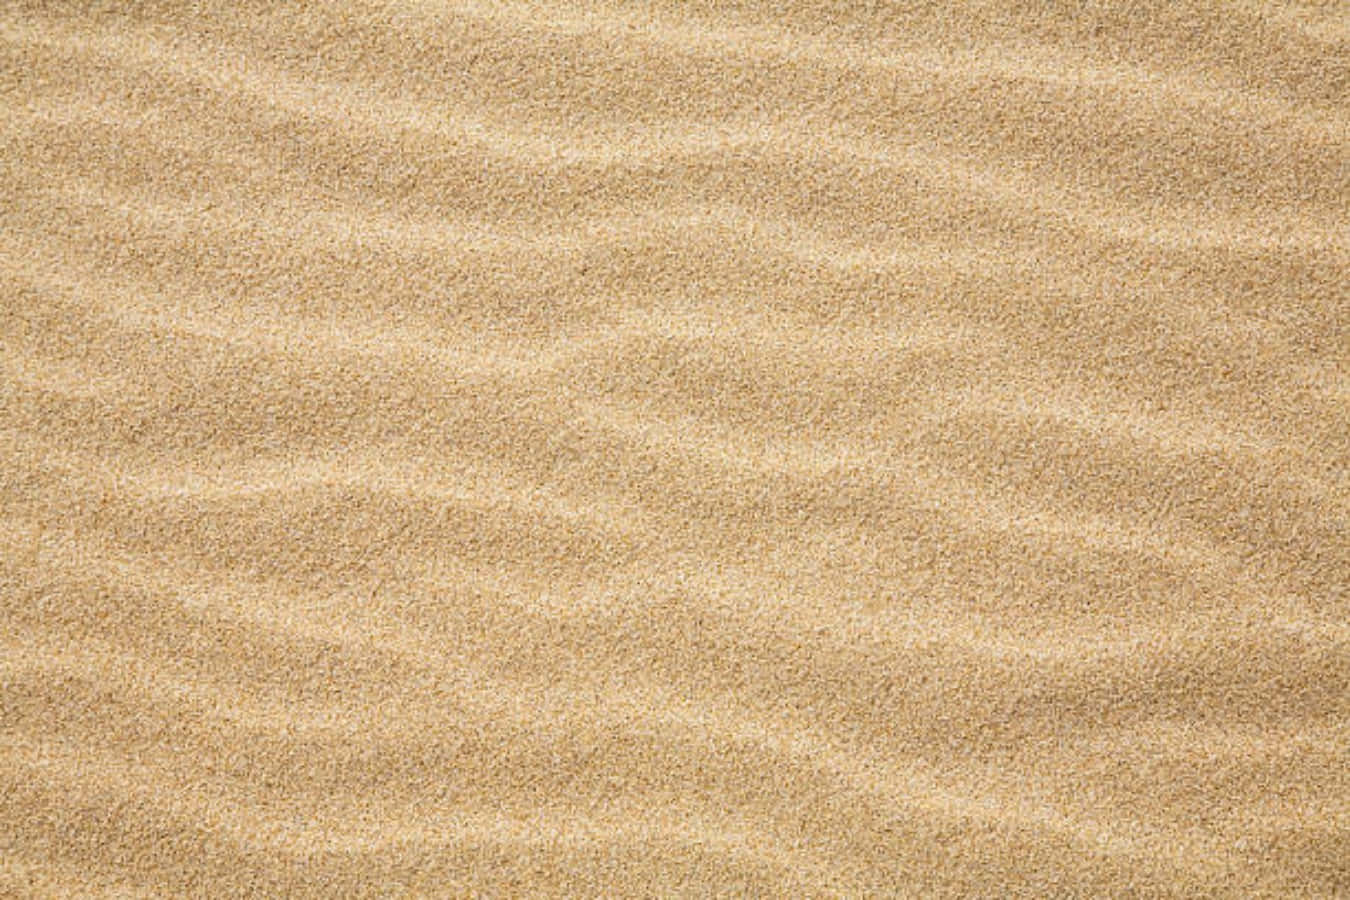 Wavy Beach Fine Sand Picture